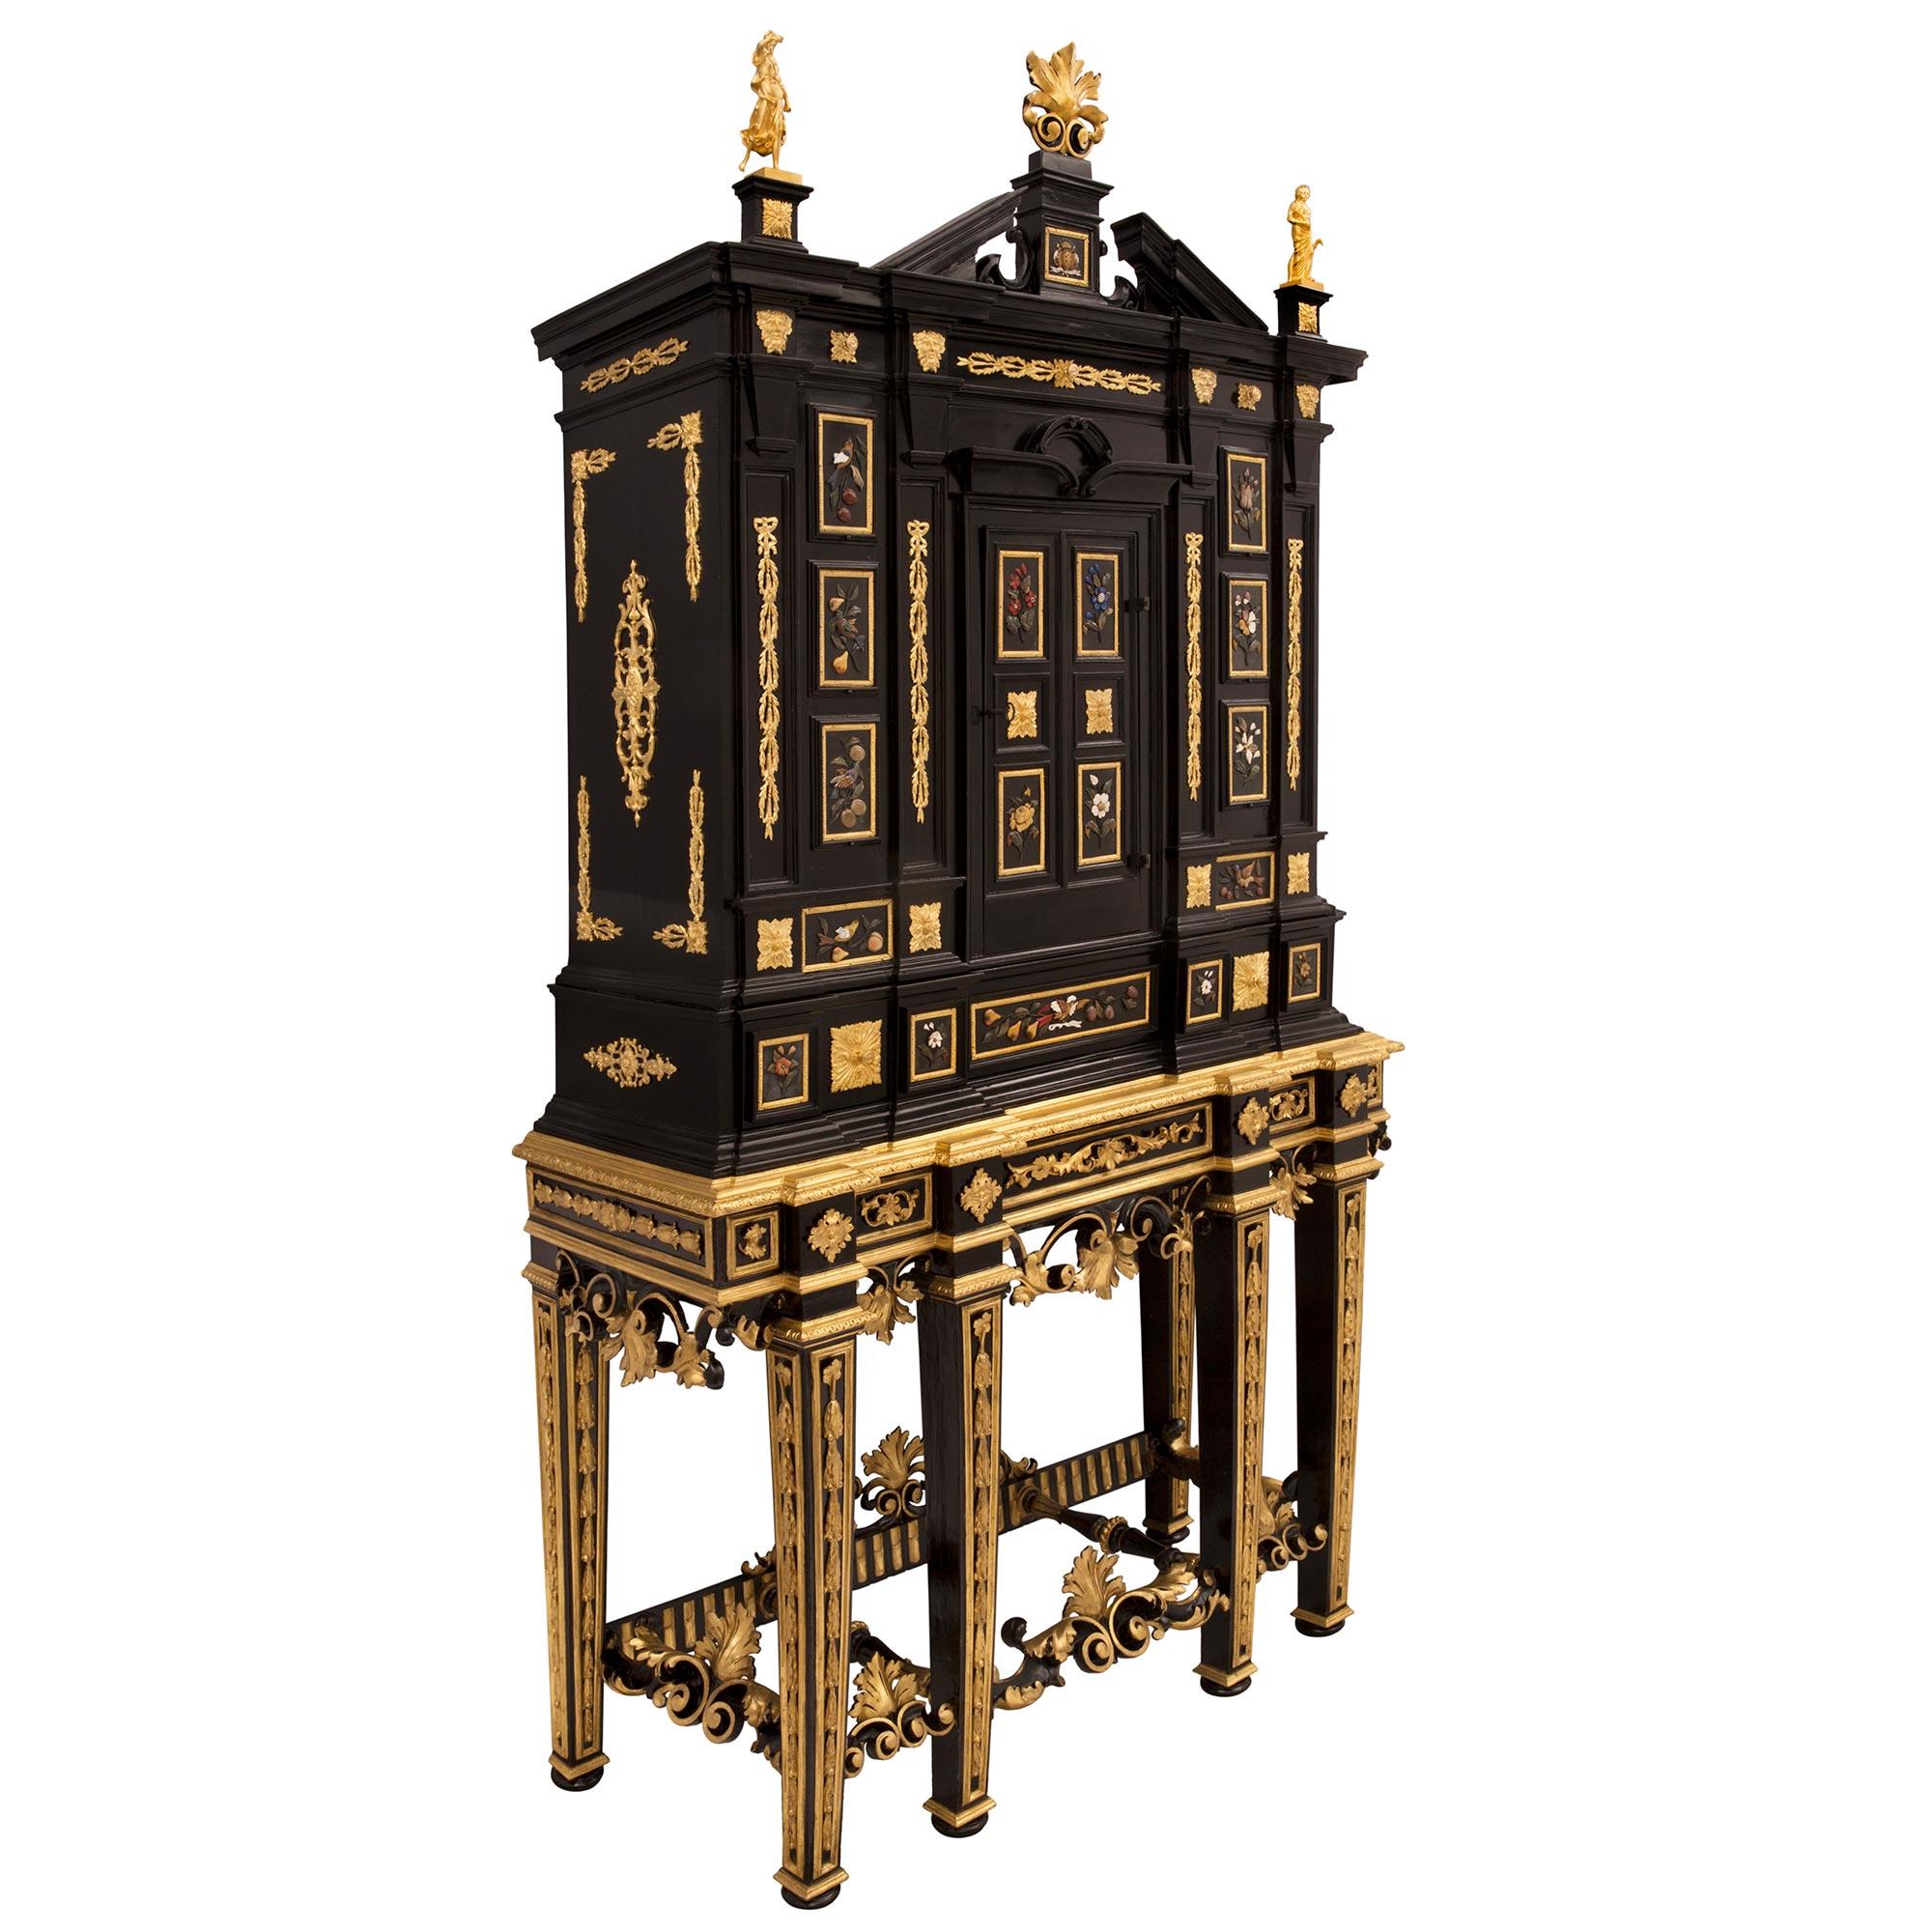 Un superbe cabinet baroque italien du 19e siècle en bois fruitier ébonisé, bois doré, bronze doré et pierres semi précieuses et dures de Florentine. Le meuble est surélevé par une base unique et très décorative composée de six remarquables pieds